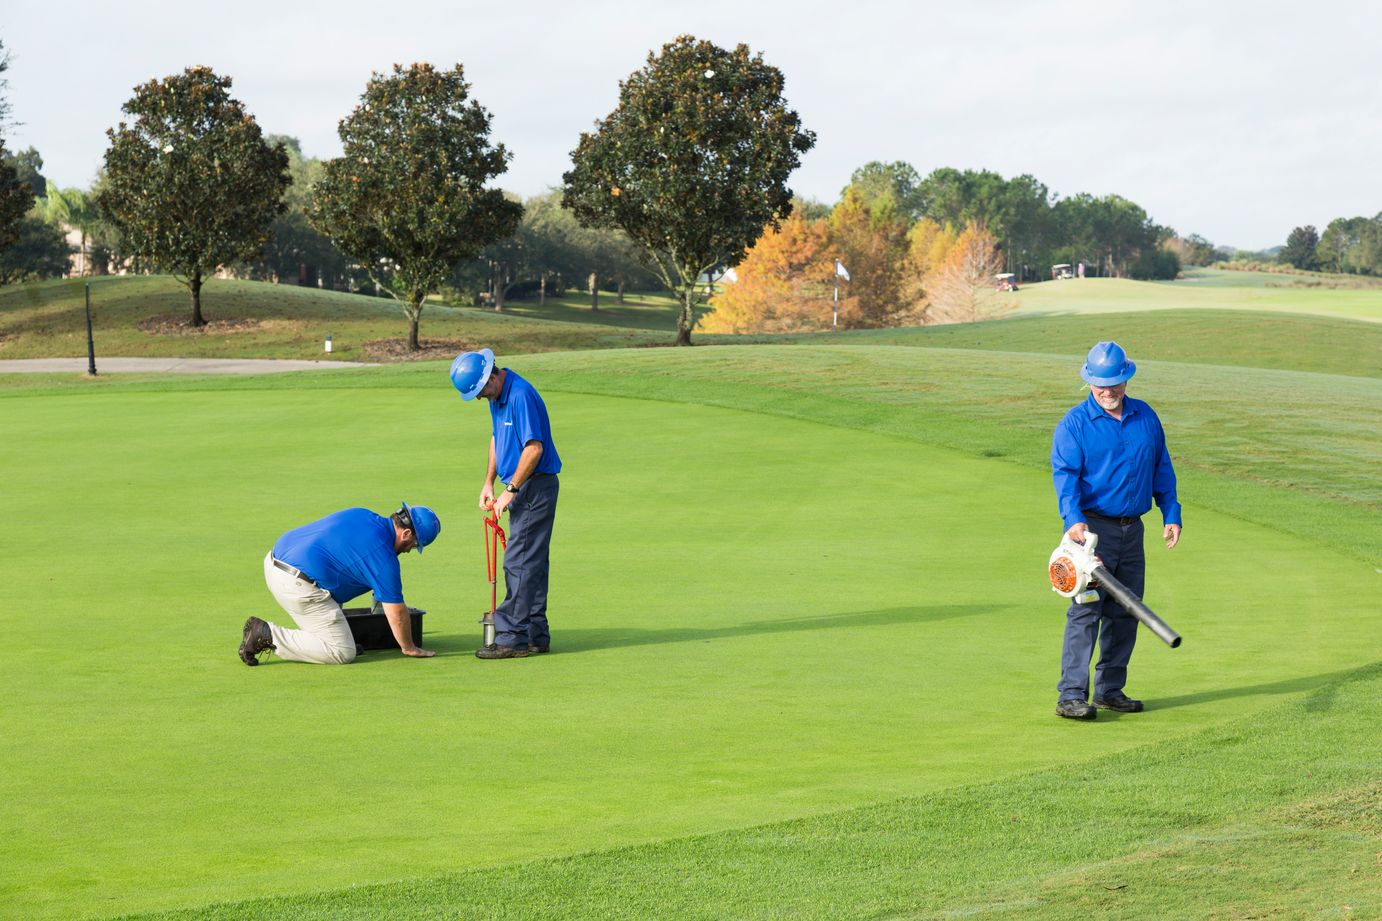 đơn vị chăm sóc cỏ sân golf chuyên nghiệp